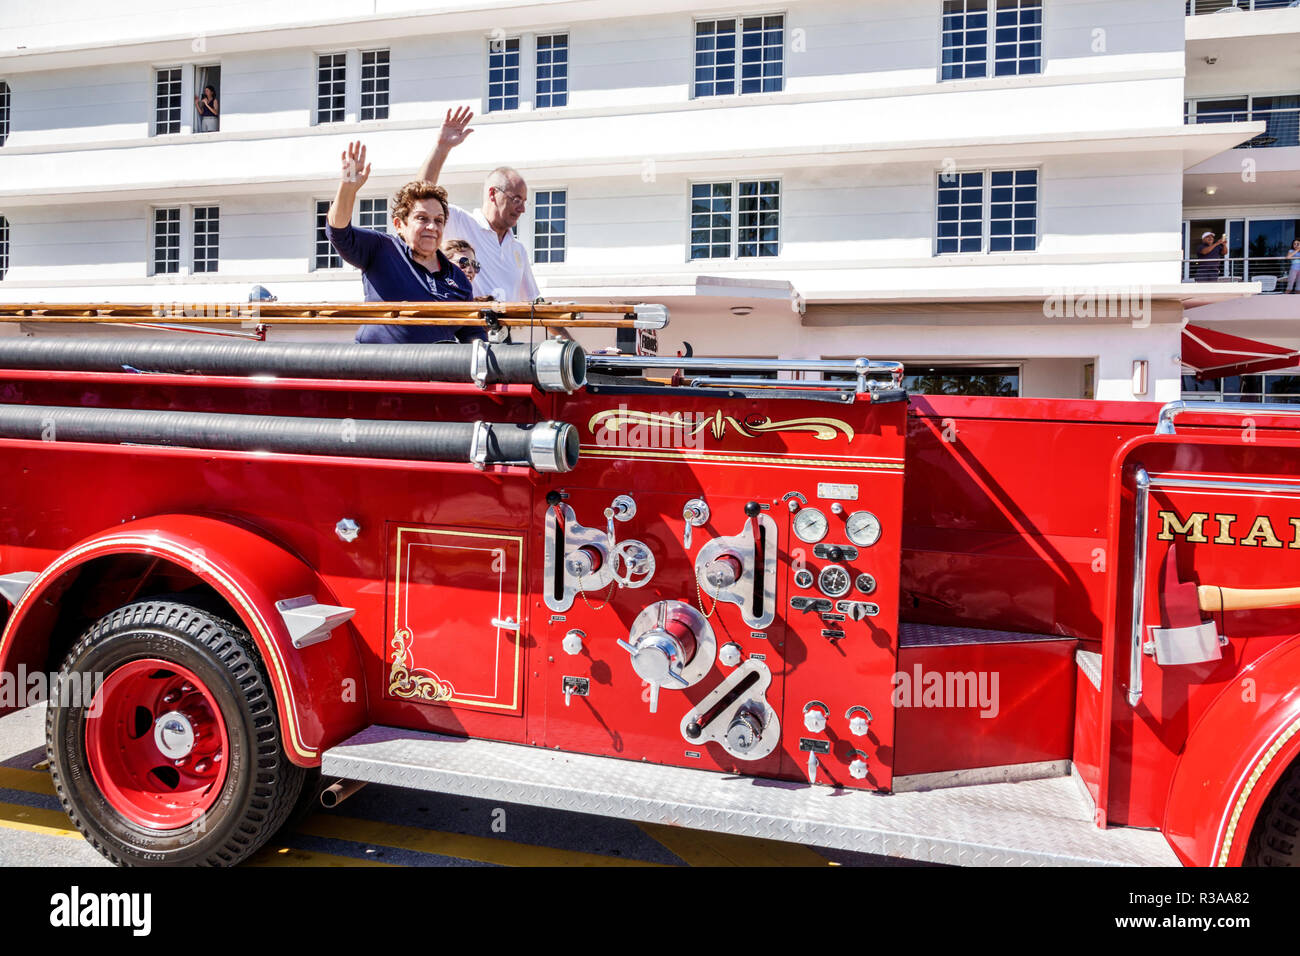 Miami Beach Florida, Ocean Drive, Veterans Day Parade Aktivitäten, Feuerwehrauto, winken gewählte Politikerin, Donna Shalala, Besucher reisen Reise Tour touris Stockfoto